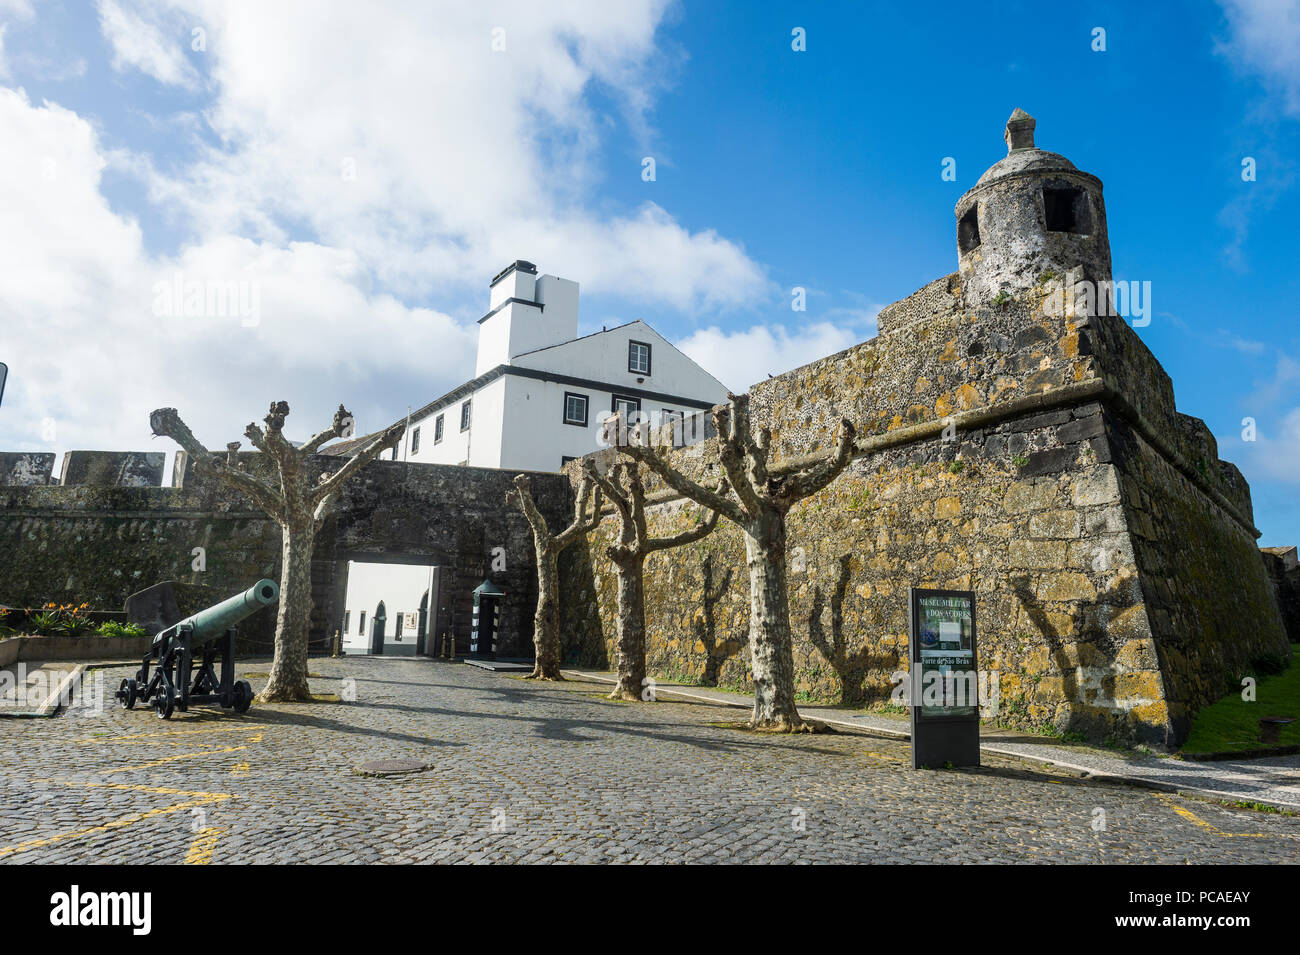 Château de Saint-blaise, la ville historique de Ponta Delgada, île de Sao Miguel, Açores, Portugal, Europe, Atlantique Banque D'Images